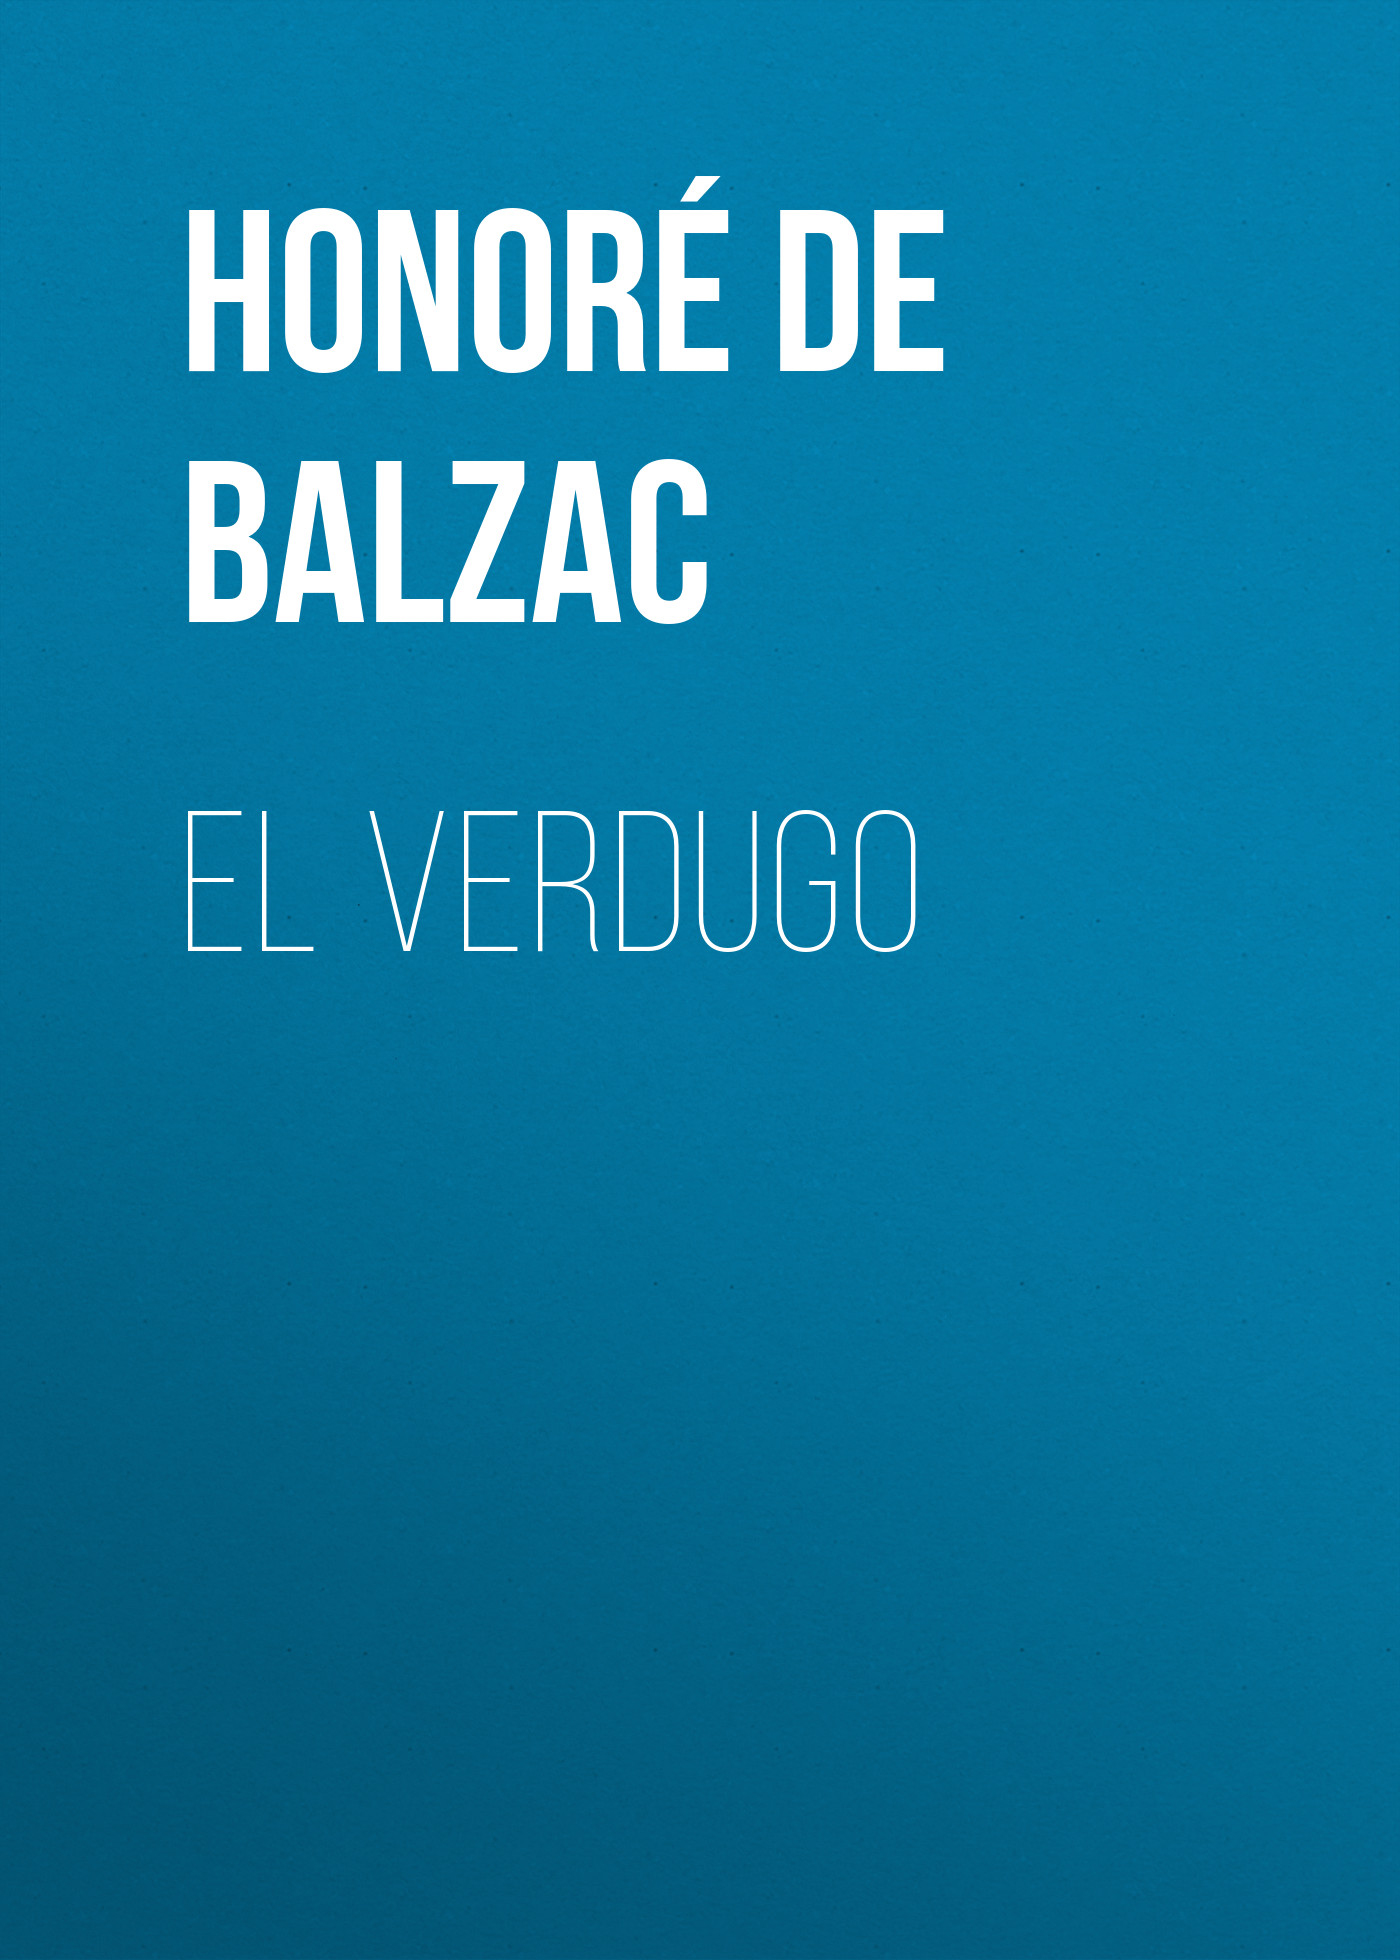 Книга El Verdugo из серии , созданная Honoré Balzac, может относится к жанру Литература 19 века, Зарубежная старинная литература, Зарубежная классика. Стоимость электронной книги El Verdugo с идентификатором 25020827 составляет 0 руб.